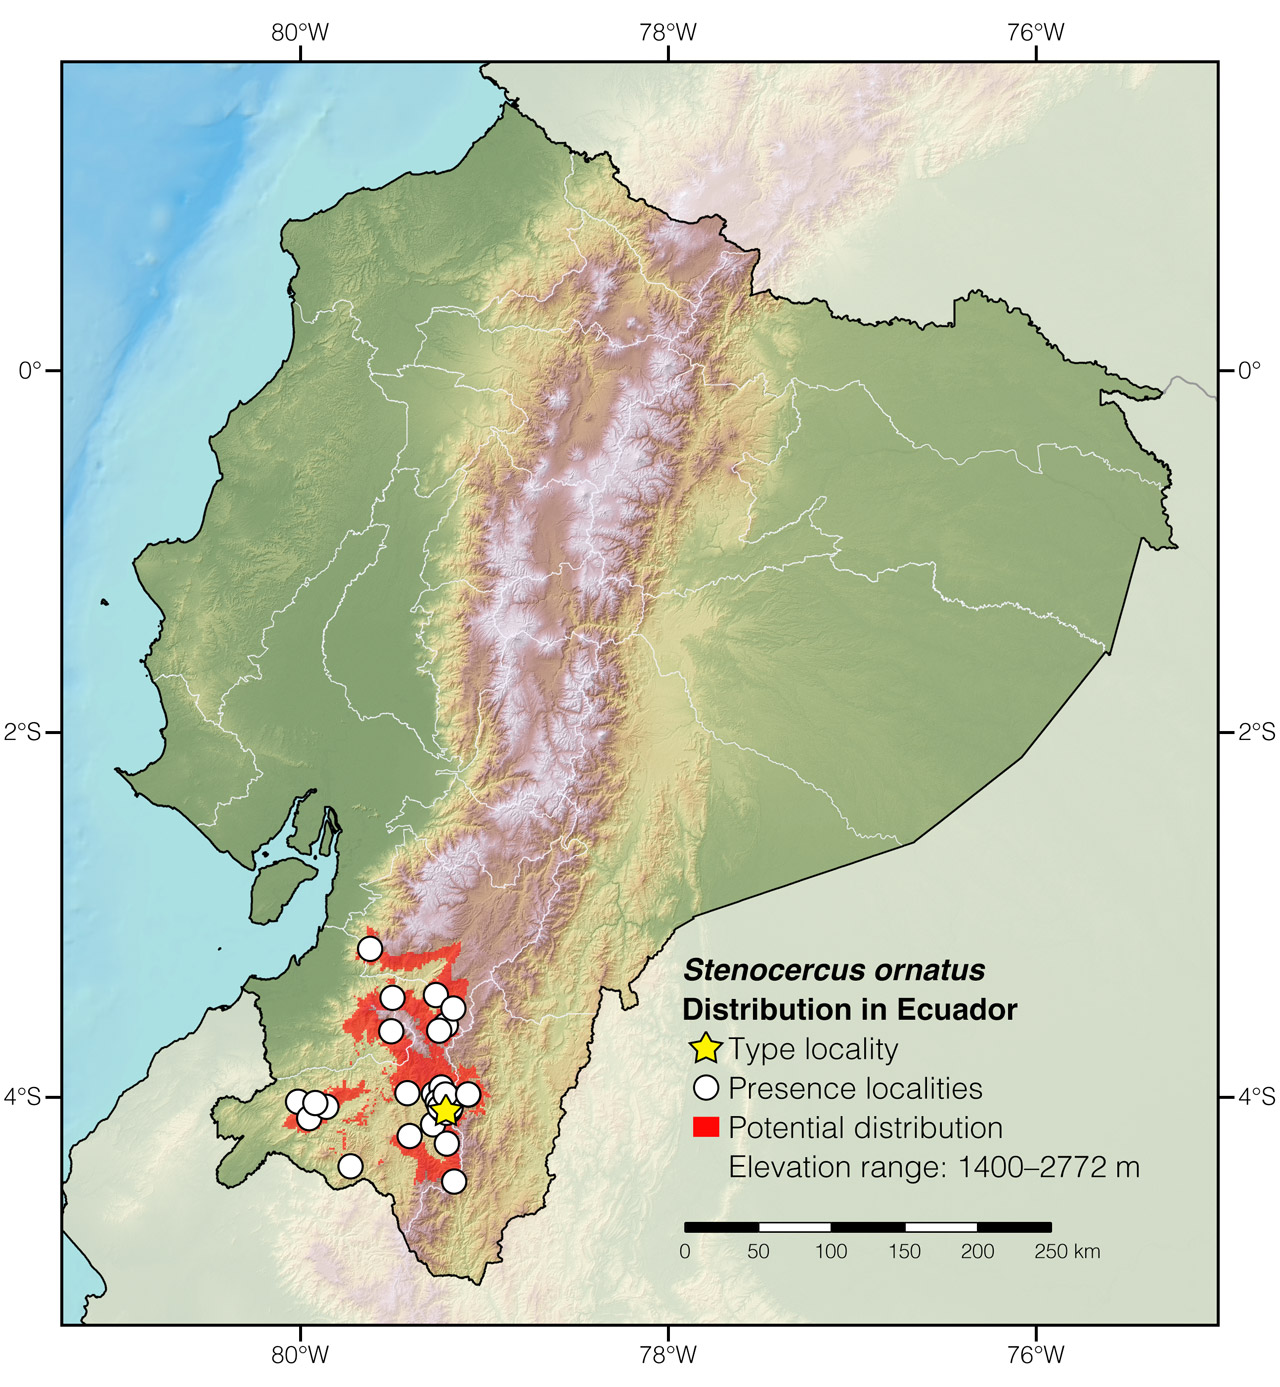 Distribution of Stenocercus ornatus in Ecuador